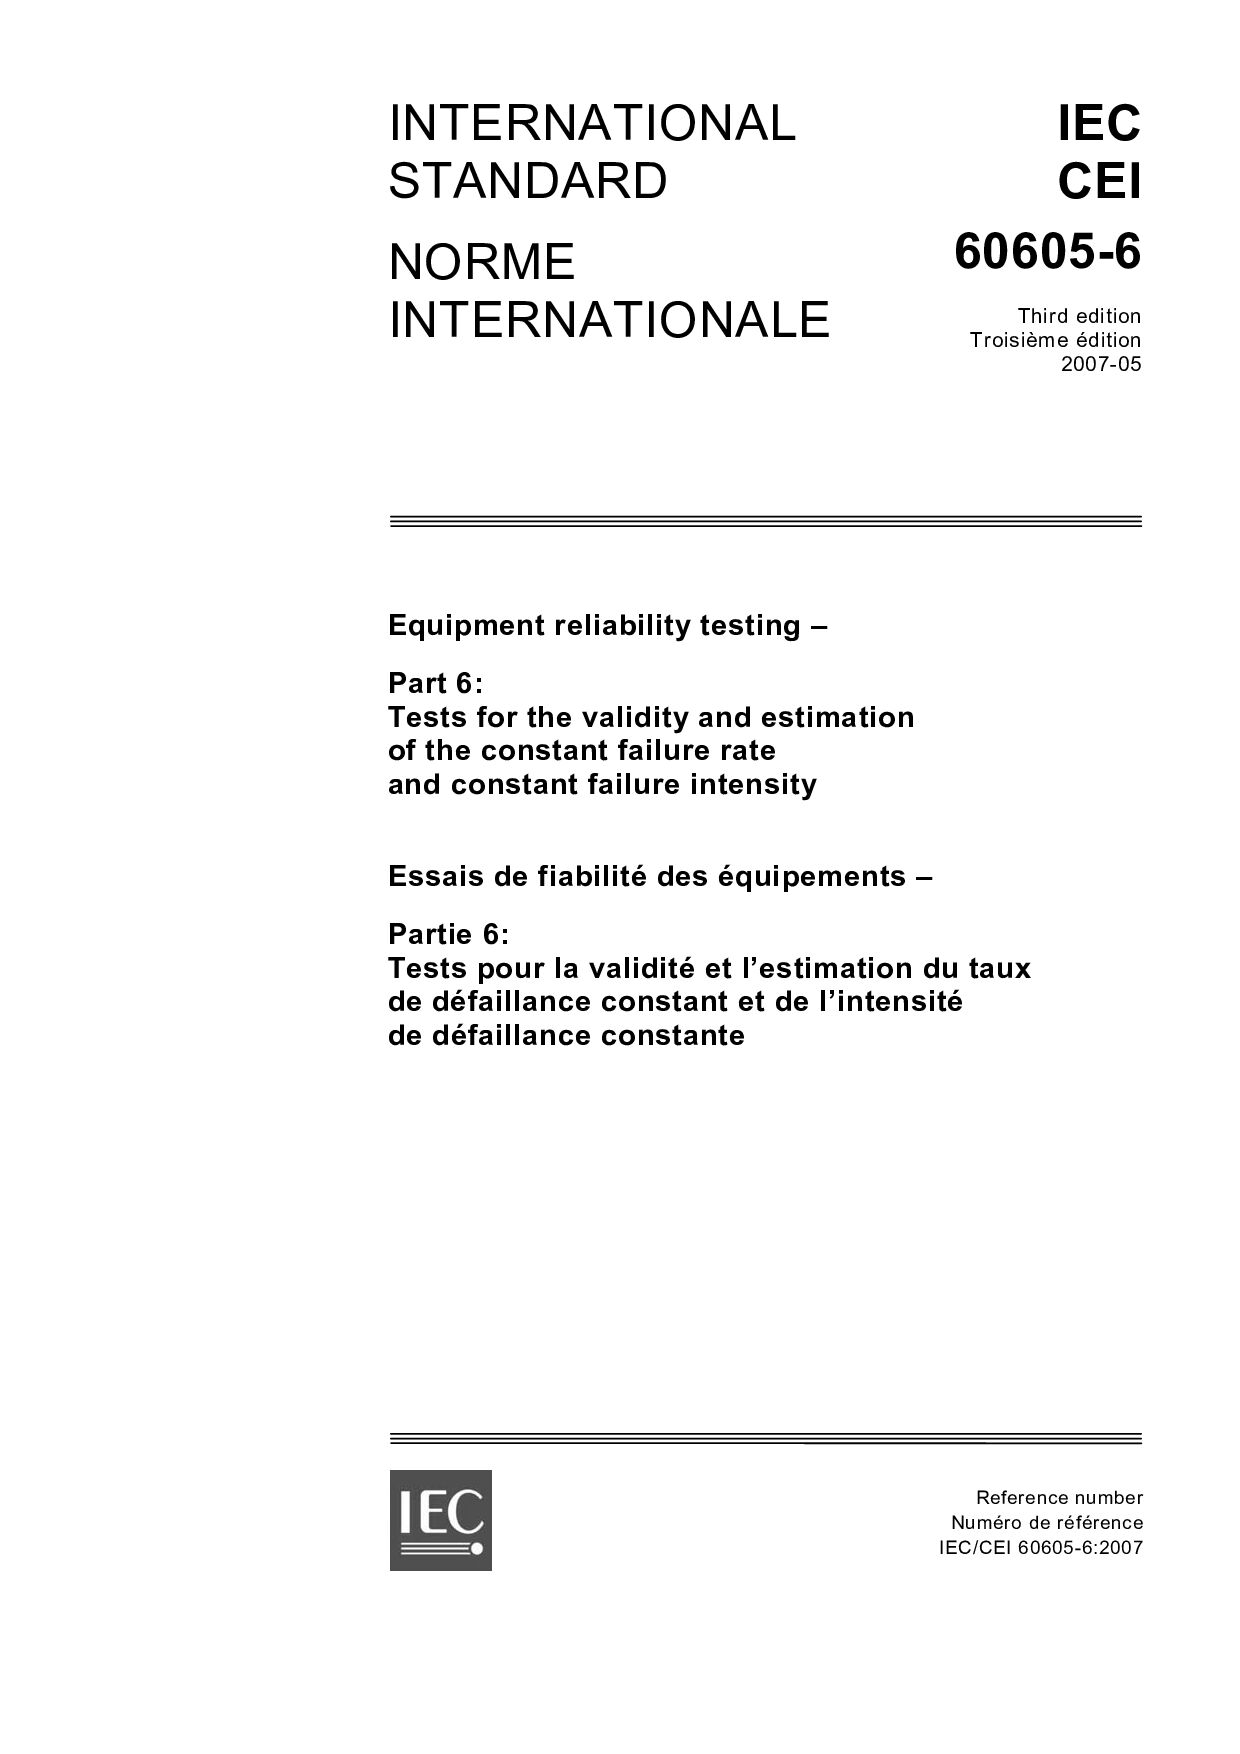 IEC 60605-6:2007